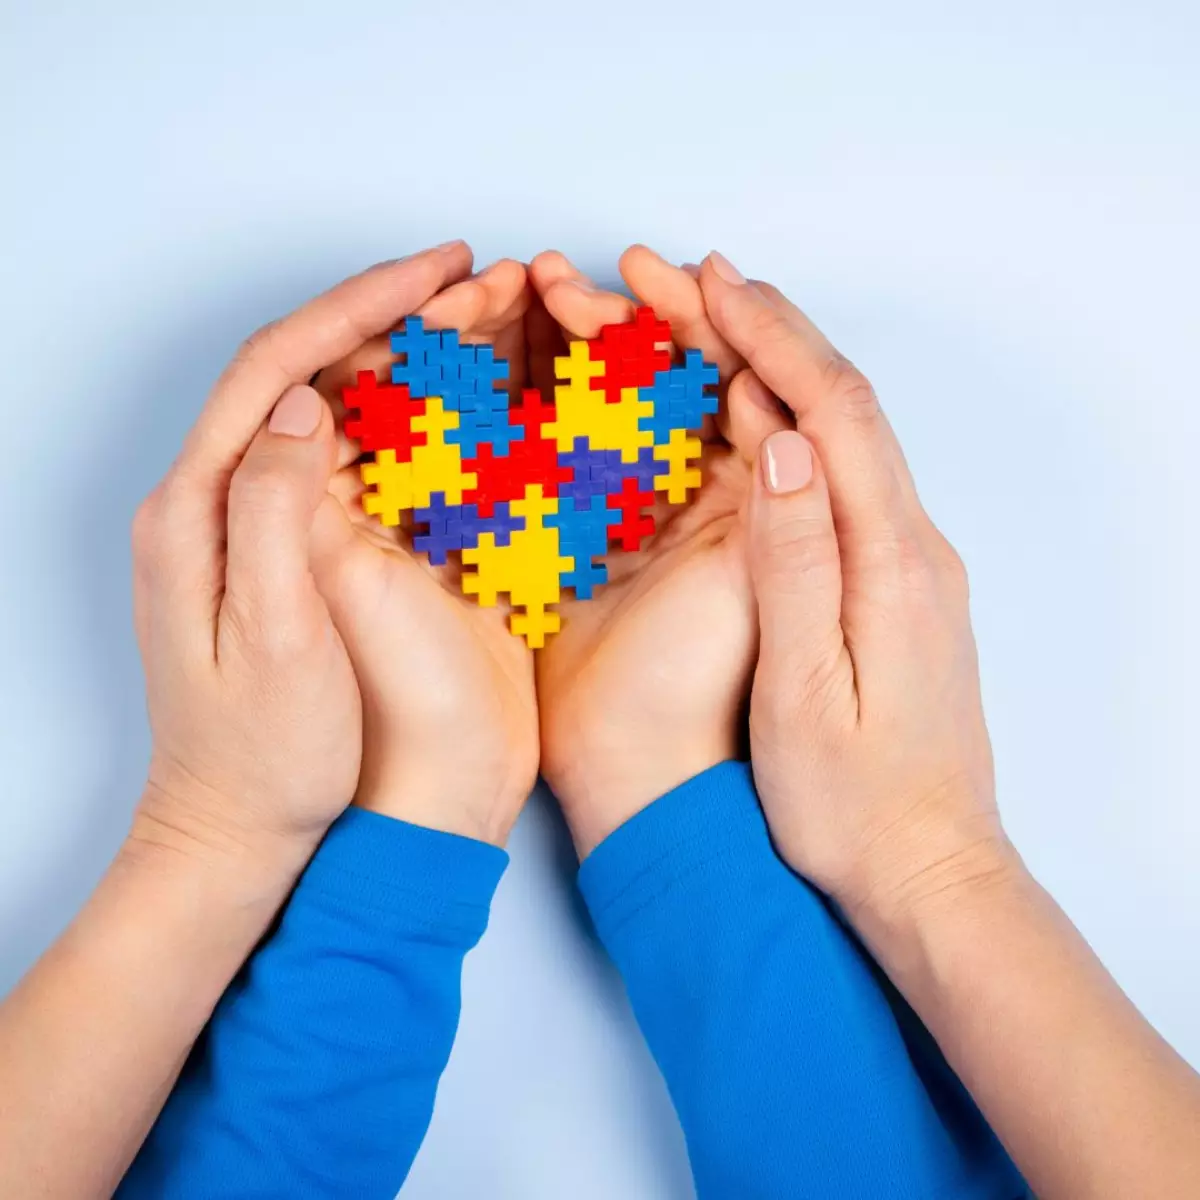 Imagem de mãos femininas e mãos de criança unidas, uma sobre a outra, segurando um coração formado por peças de quebra-cabeça coloridas, em alusão ao autismo.